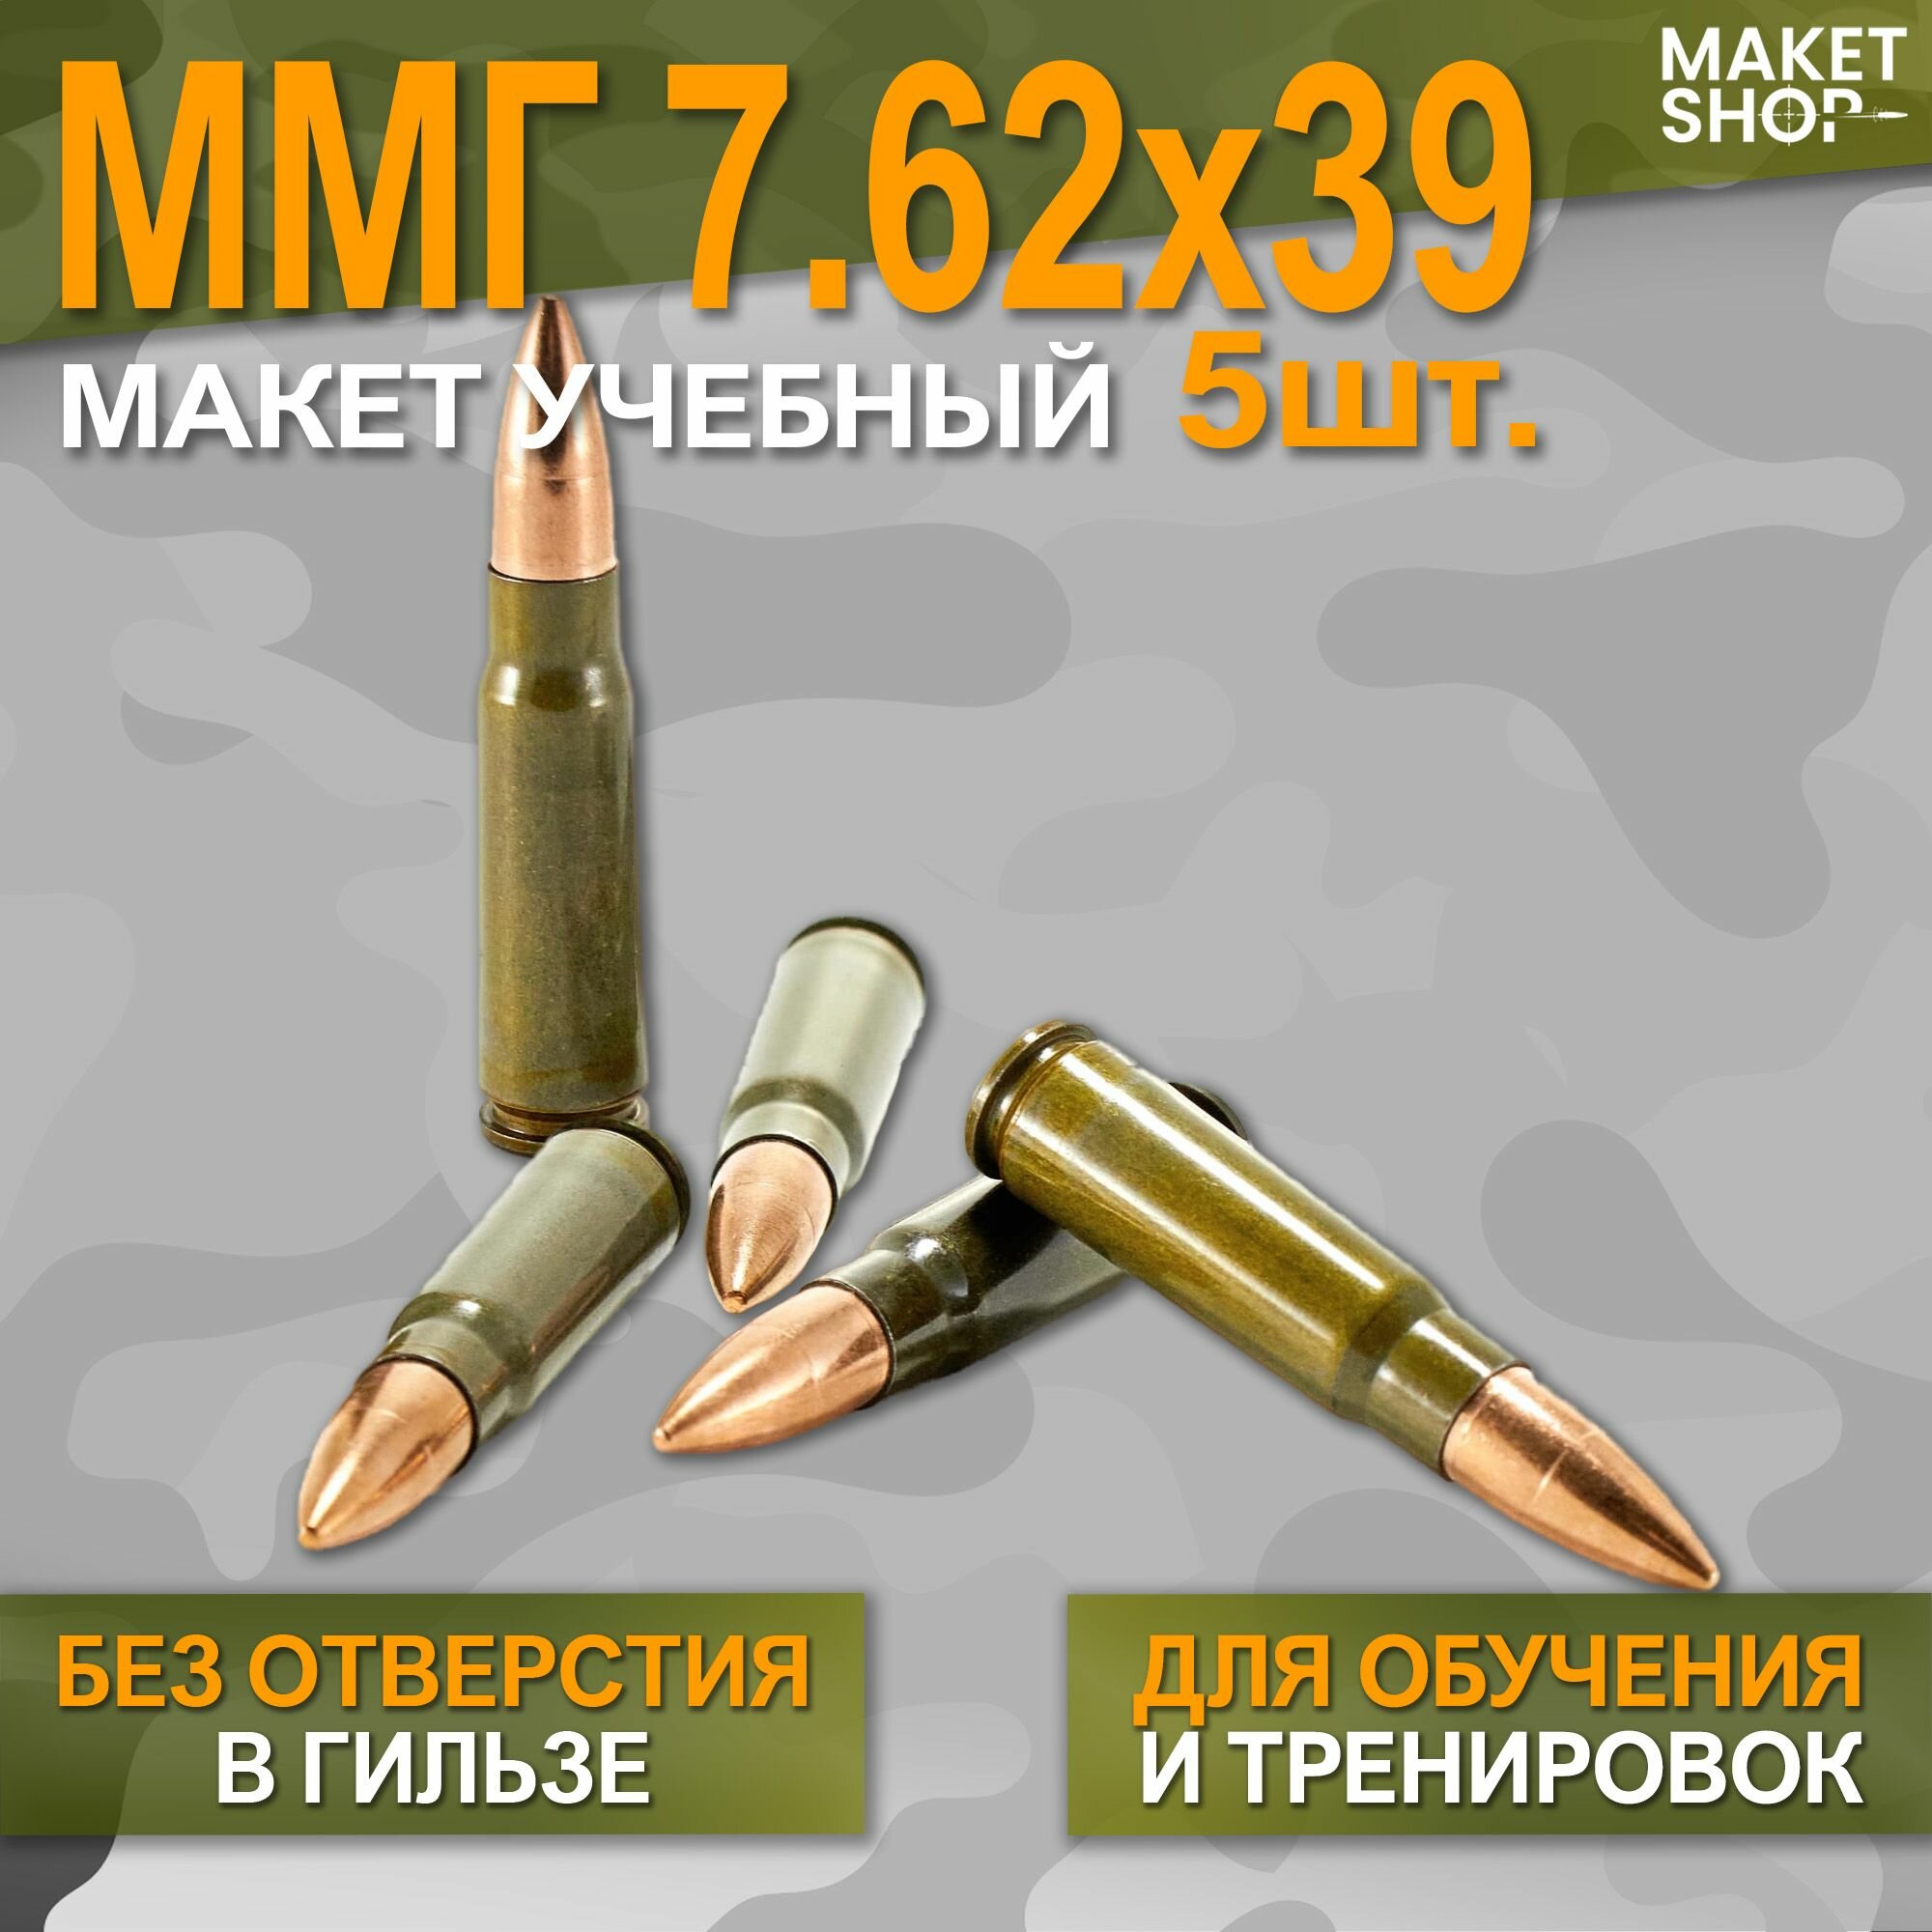 Учебный ММГ макет патрона 762x39 (АК-47) 5 шт.